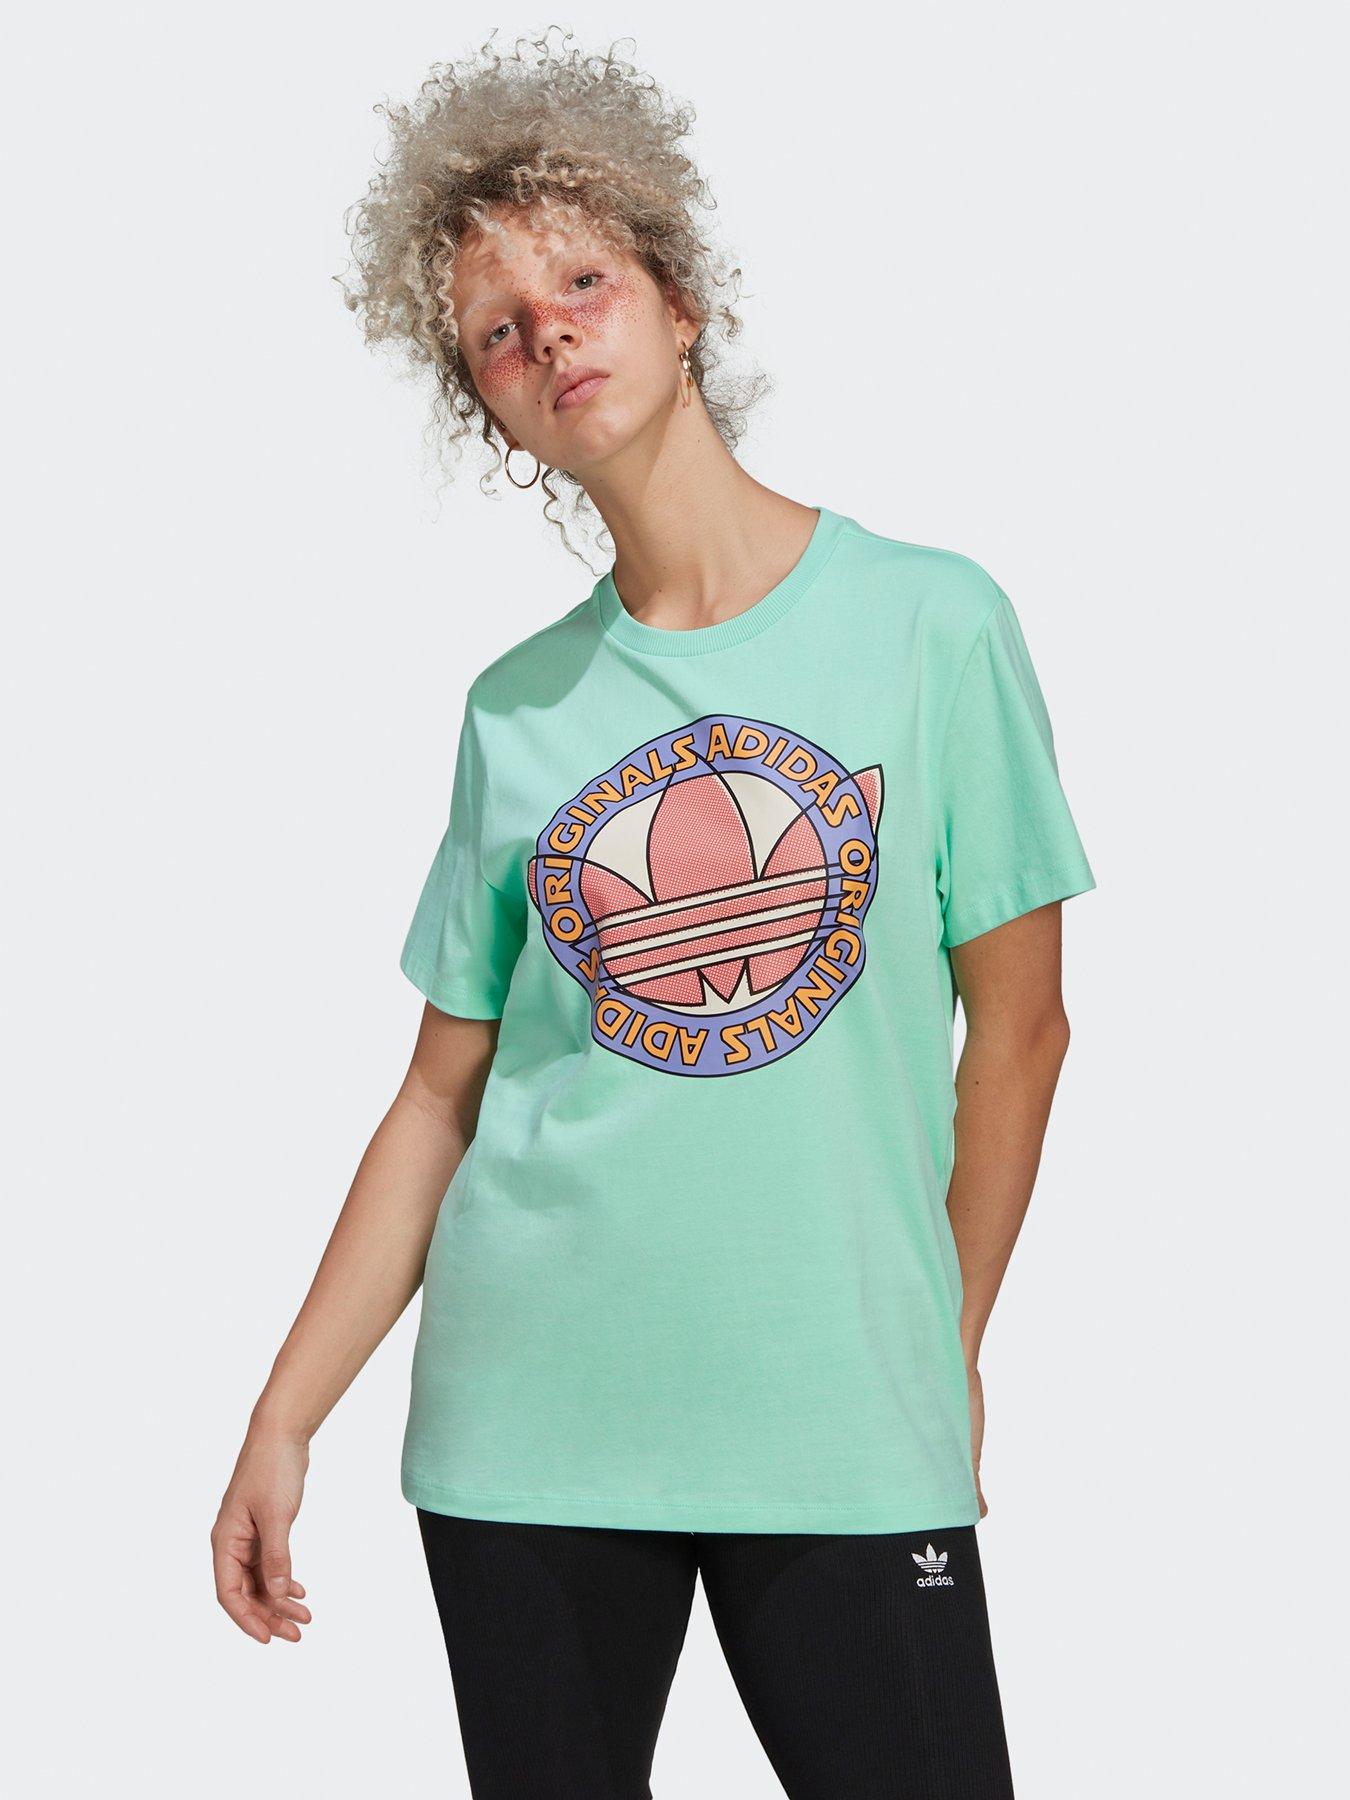 adidas Originals Summer Surf T-shirt, Green, Size 4, Women